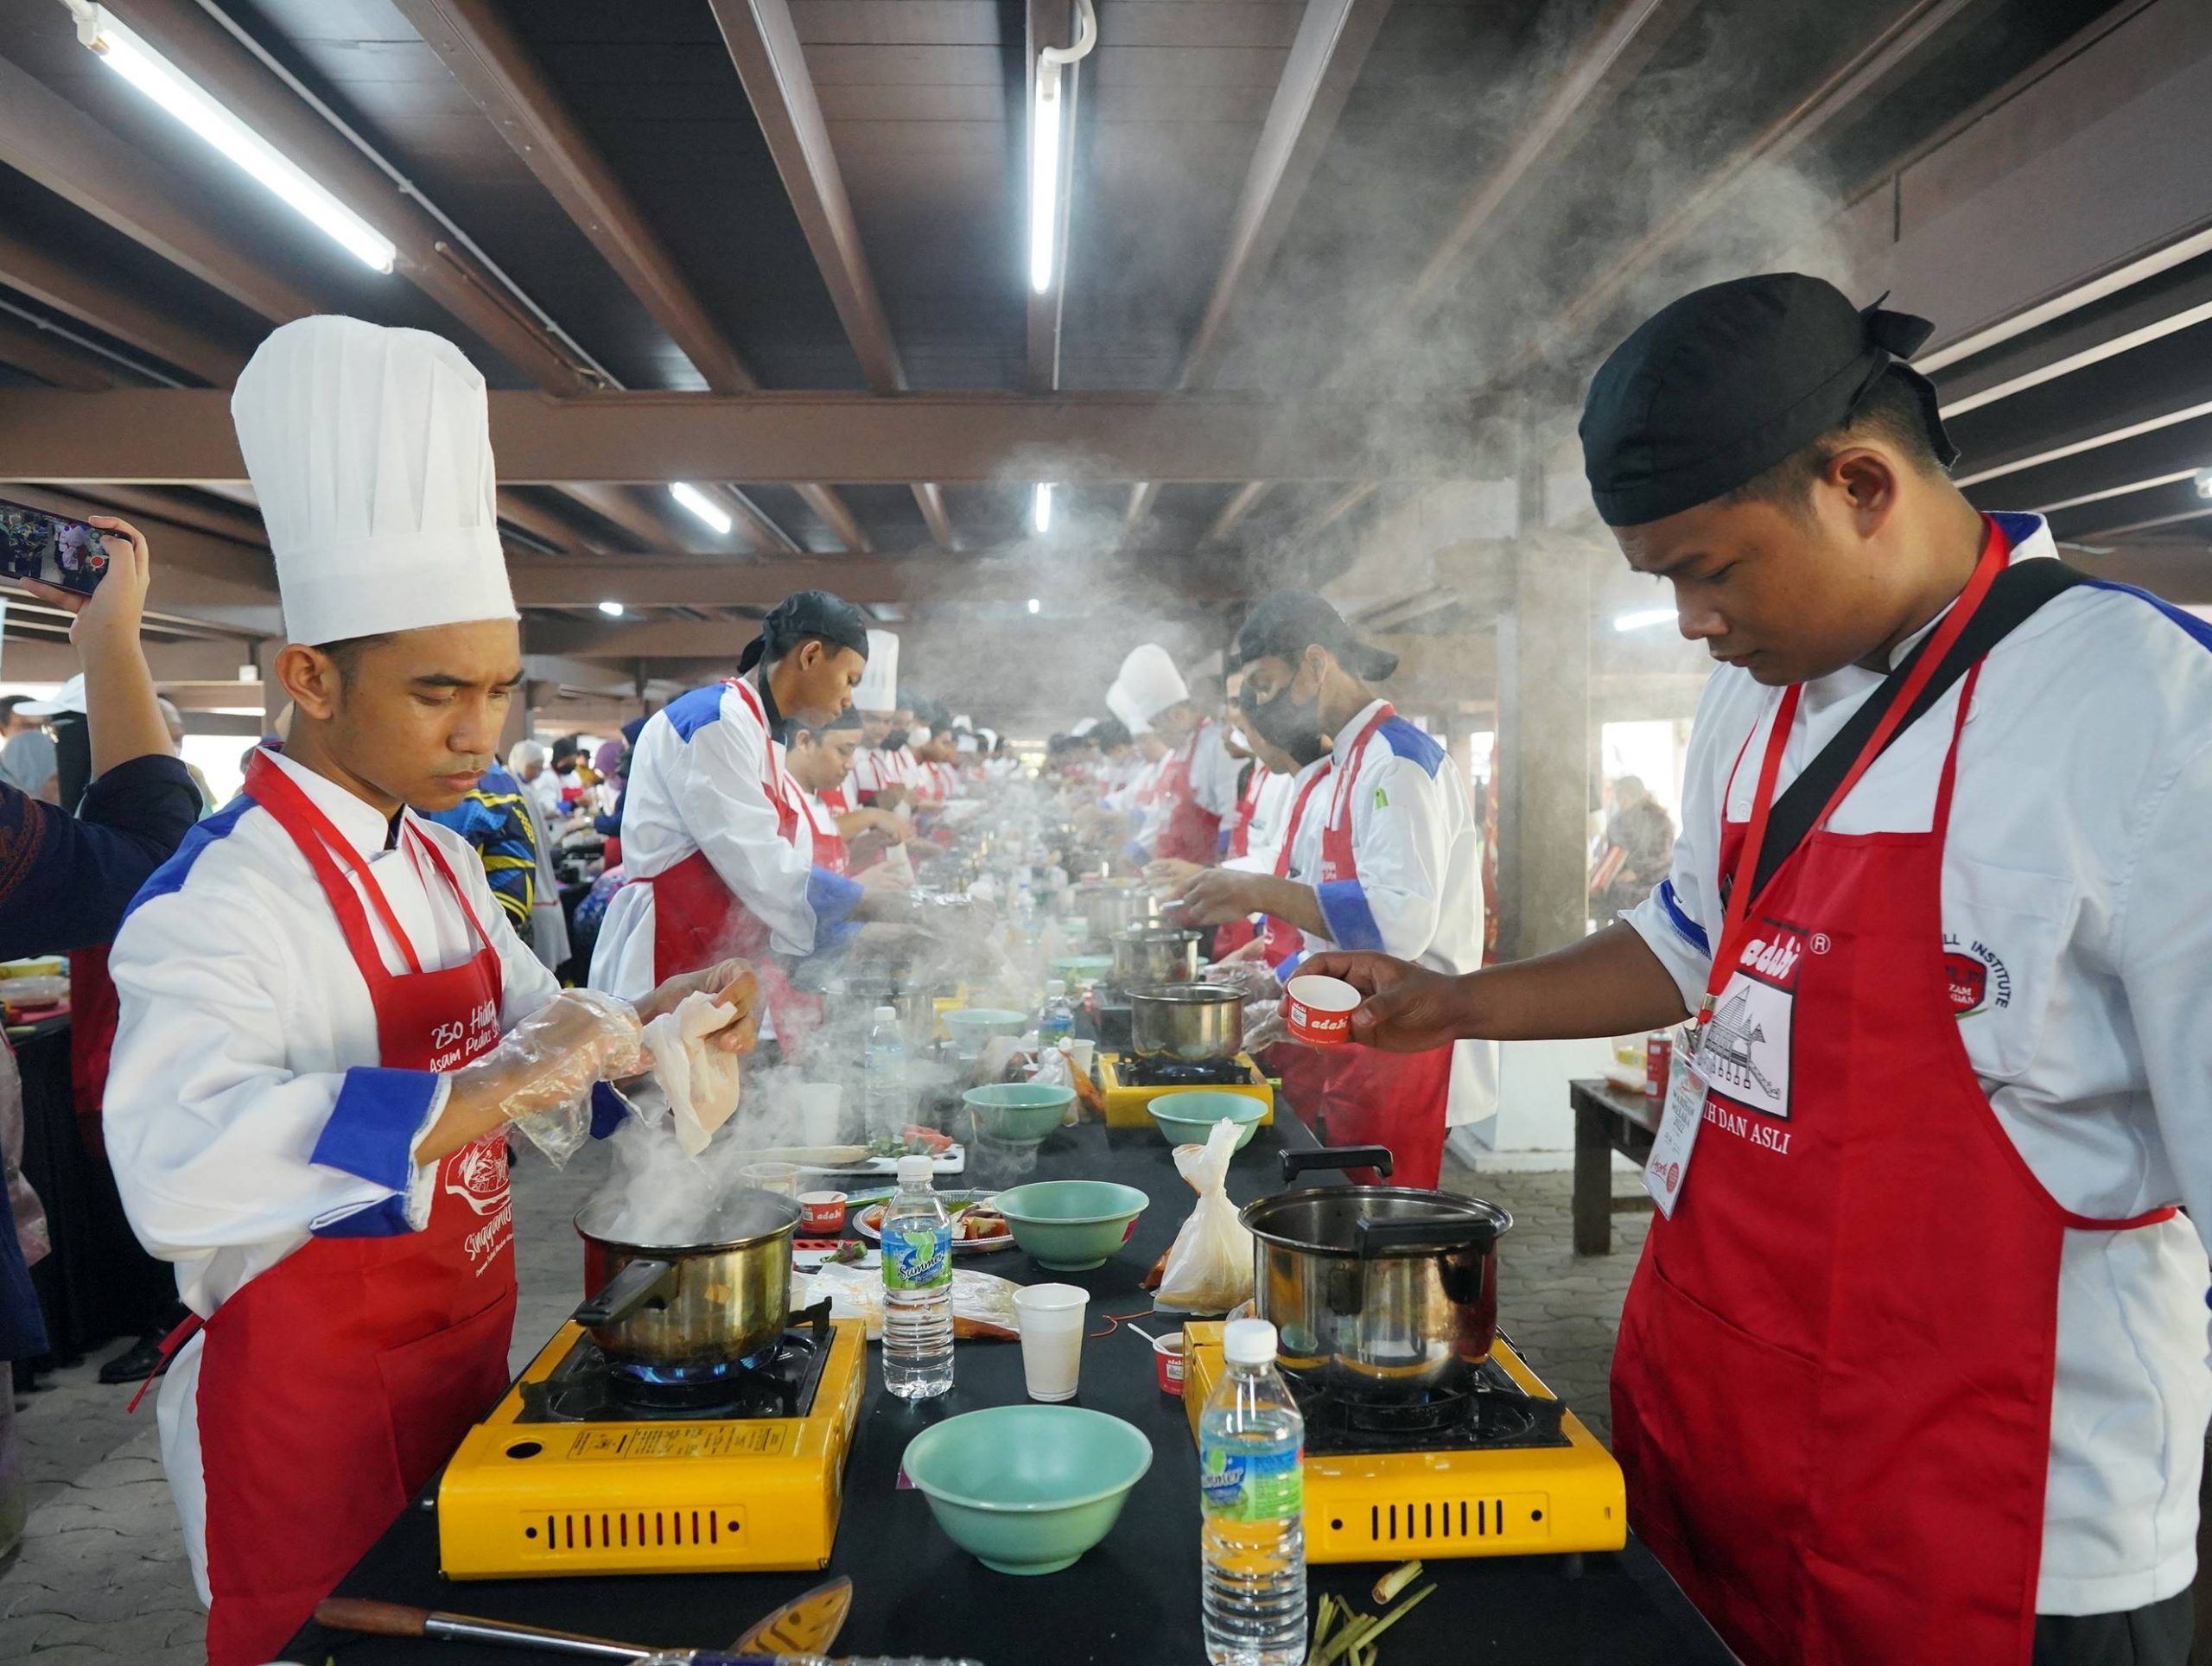 （封面副文 ）250人同步烹煮亚叁鱼，甲博物馆机构申请《马来西亚记录大全》